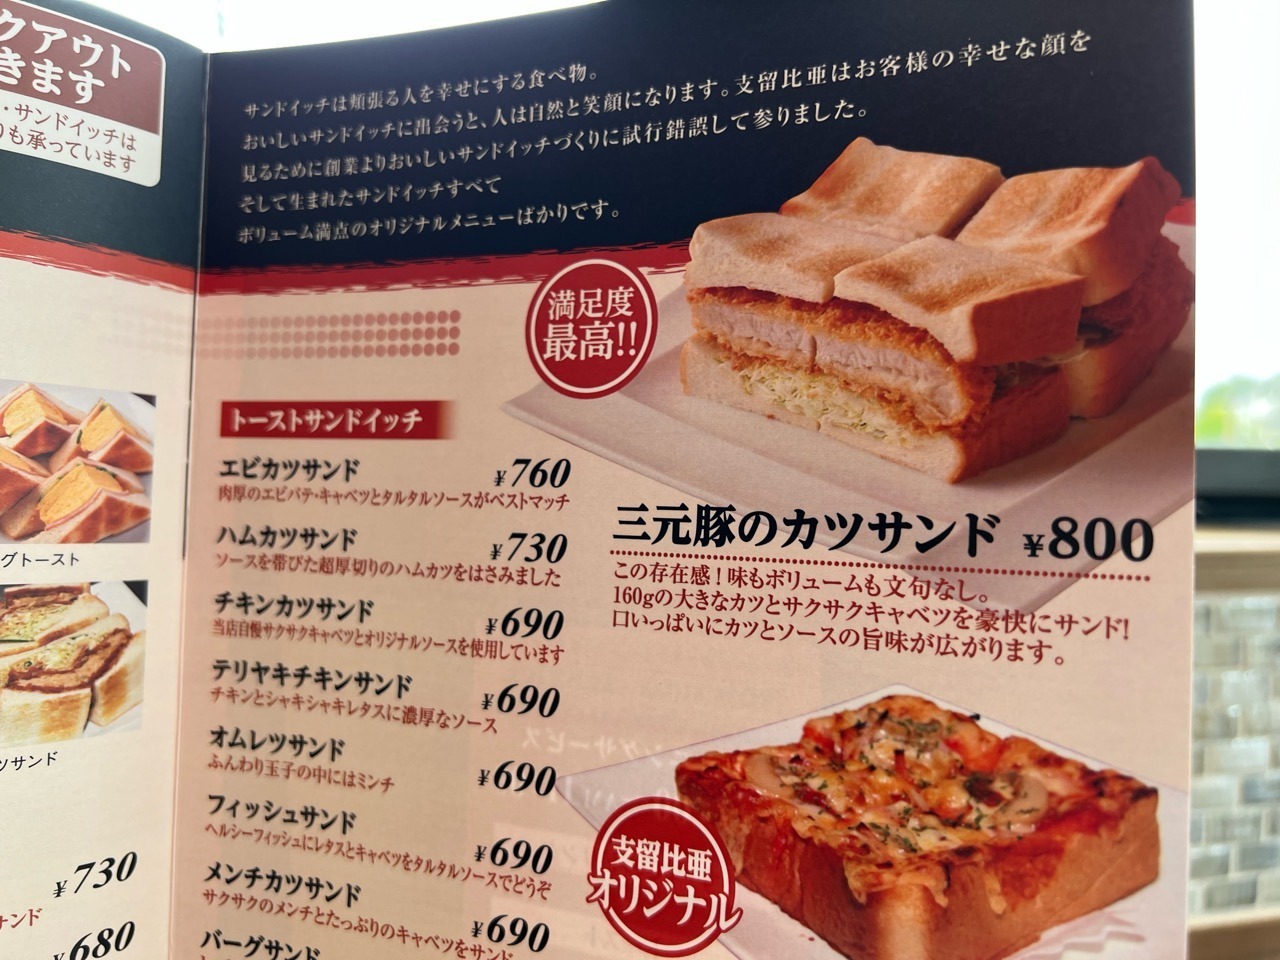 「支留比亜珈琲店 豊田整形外科店」名物サンドイッチ